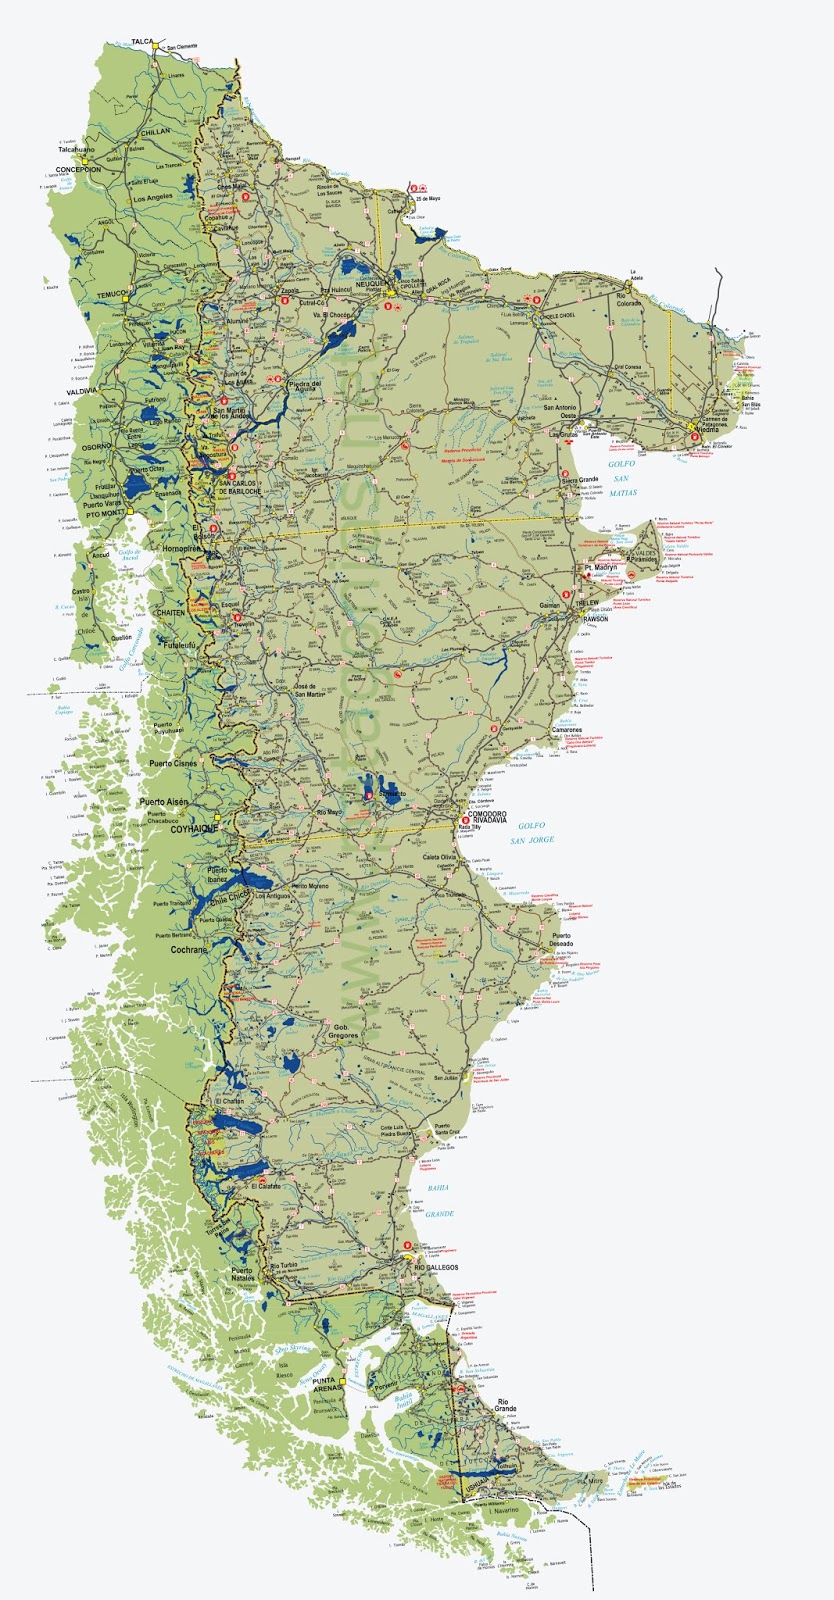 Patagonia-Argentina-51